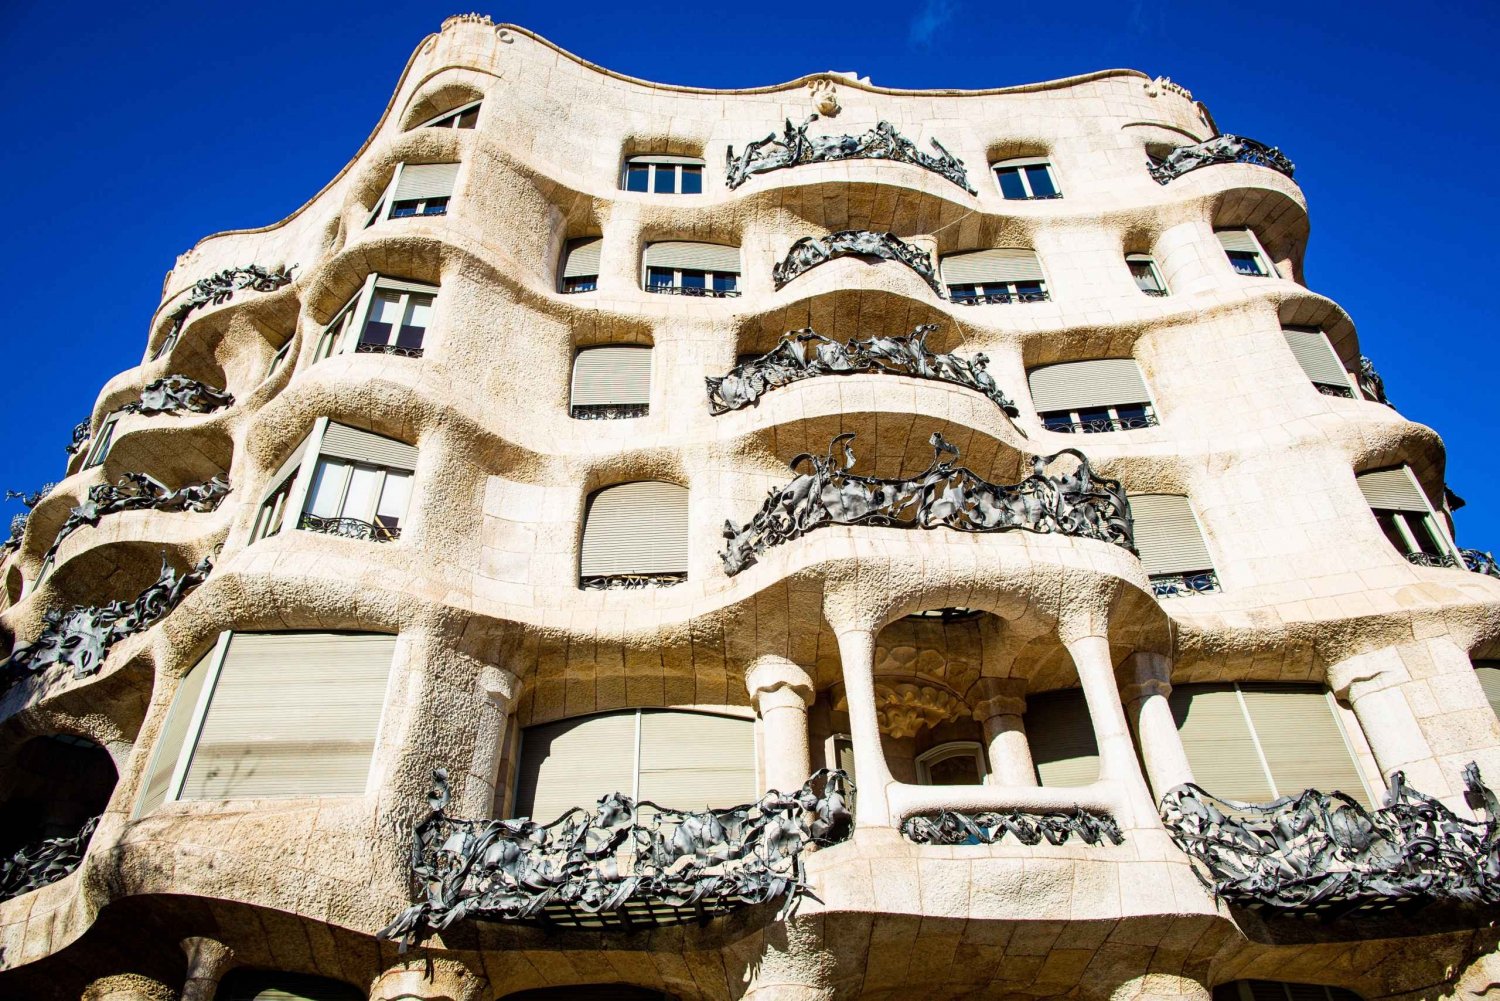 Segway Tour: Gaudi Highlights